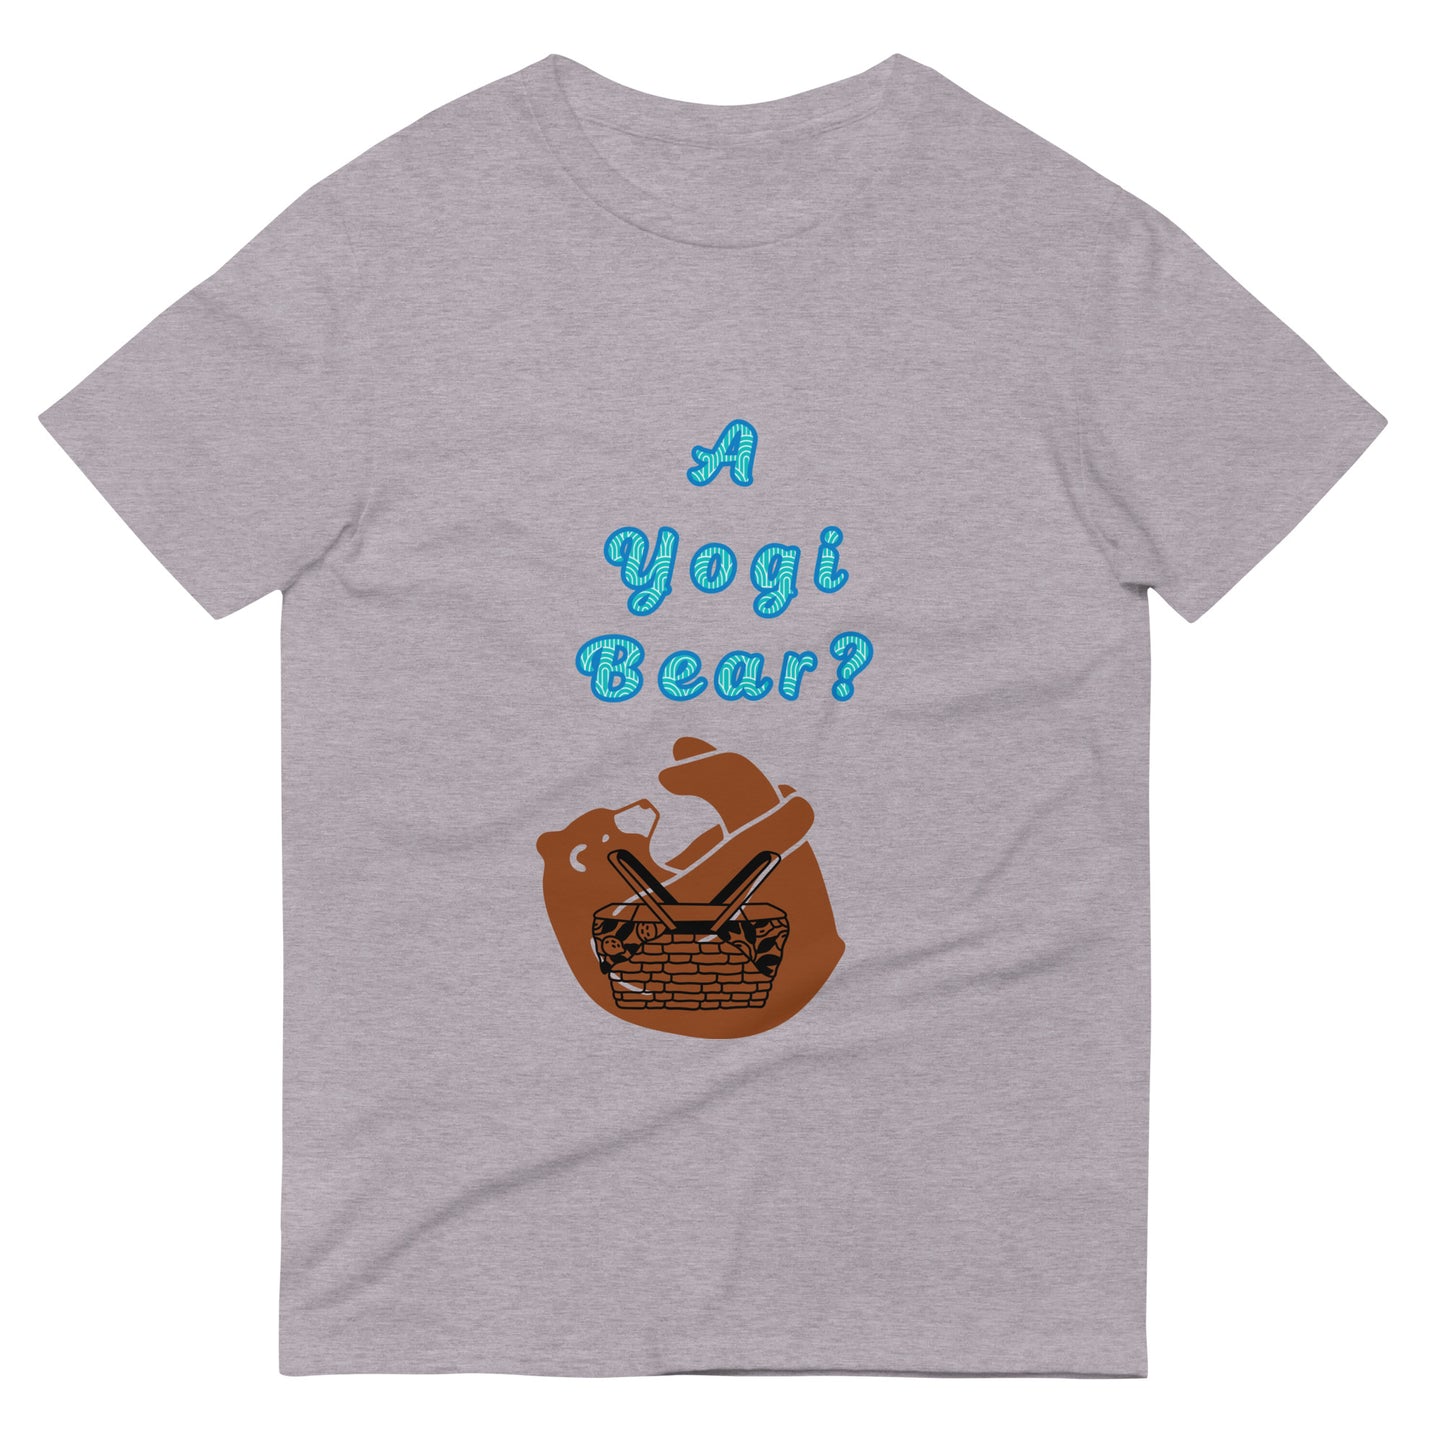 Yogi bear Short-Sleeve T-Shirt